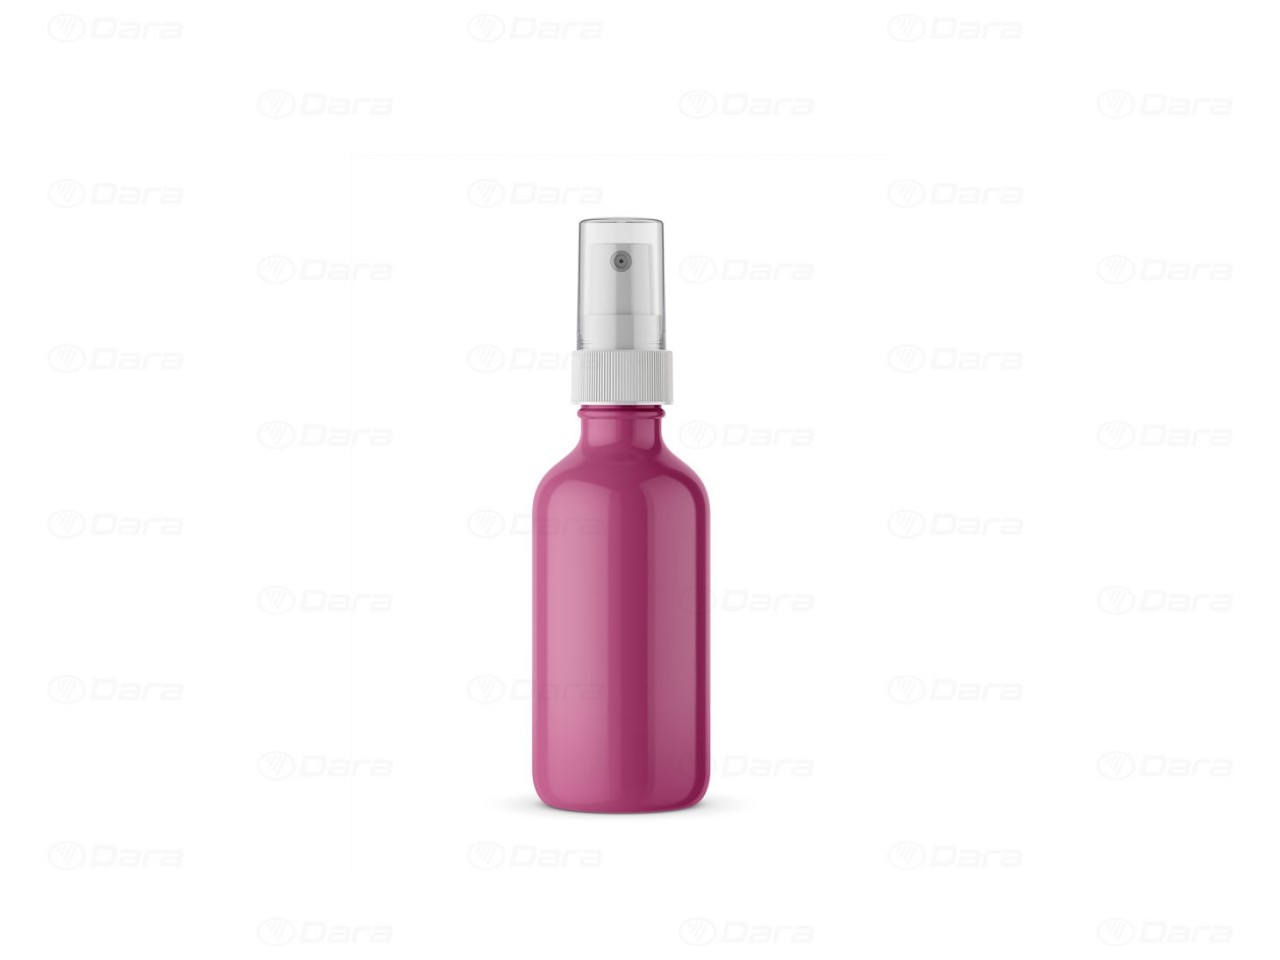 Llenadoras - cerradoras para frascos con bomba dosificadora